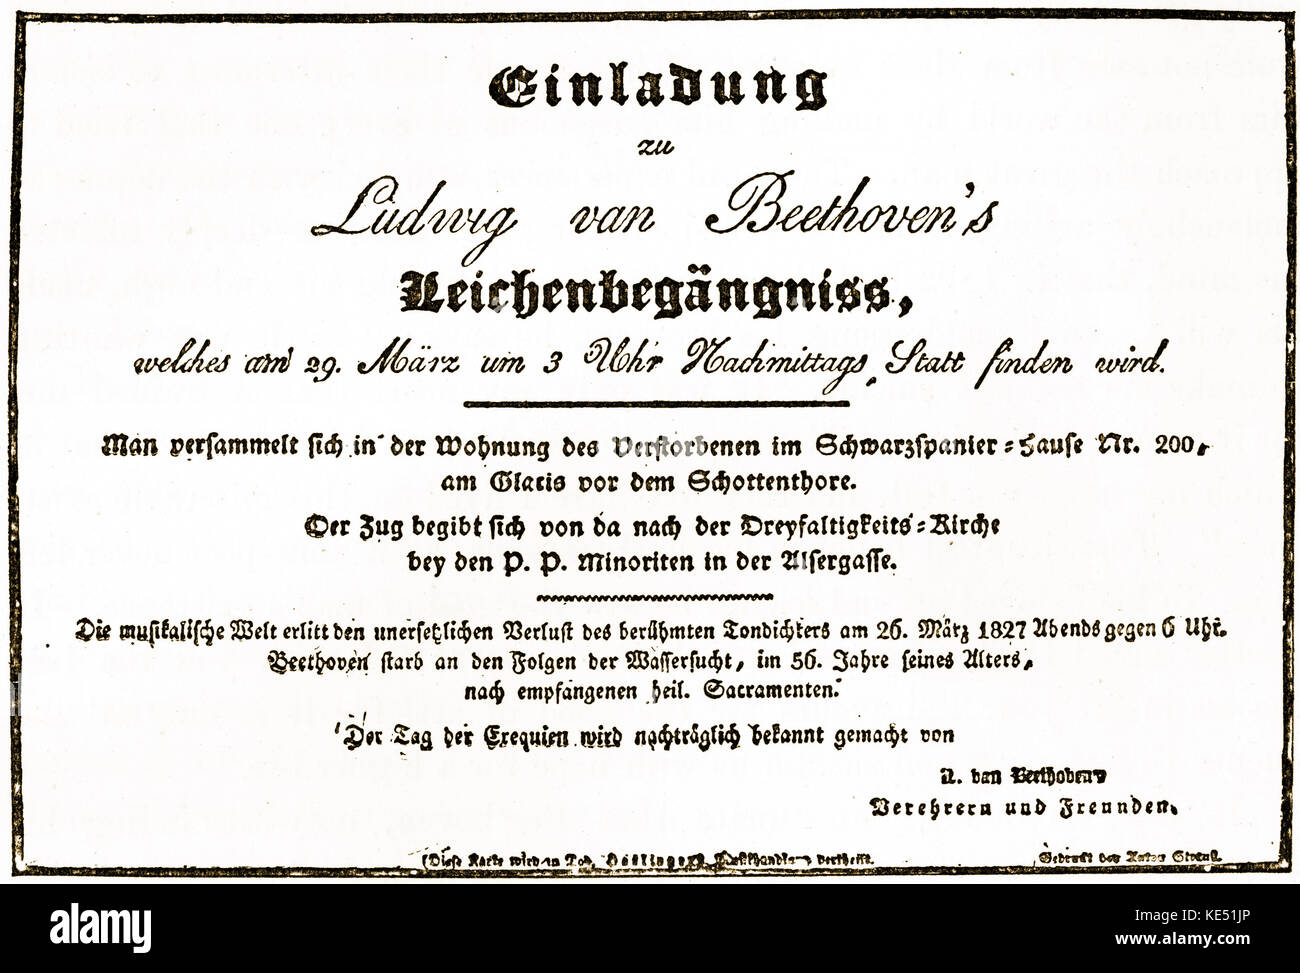 Ludwig van Beethoven - invitation pour le compositeur allemand,  funérailles, 29 mars 1827. Traduction : "La réunion de personnes aura lieu  à la résidence de la personne décédée, dans la maison Scwarzpanier,